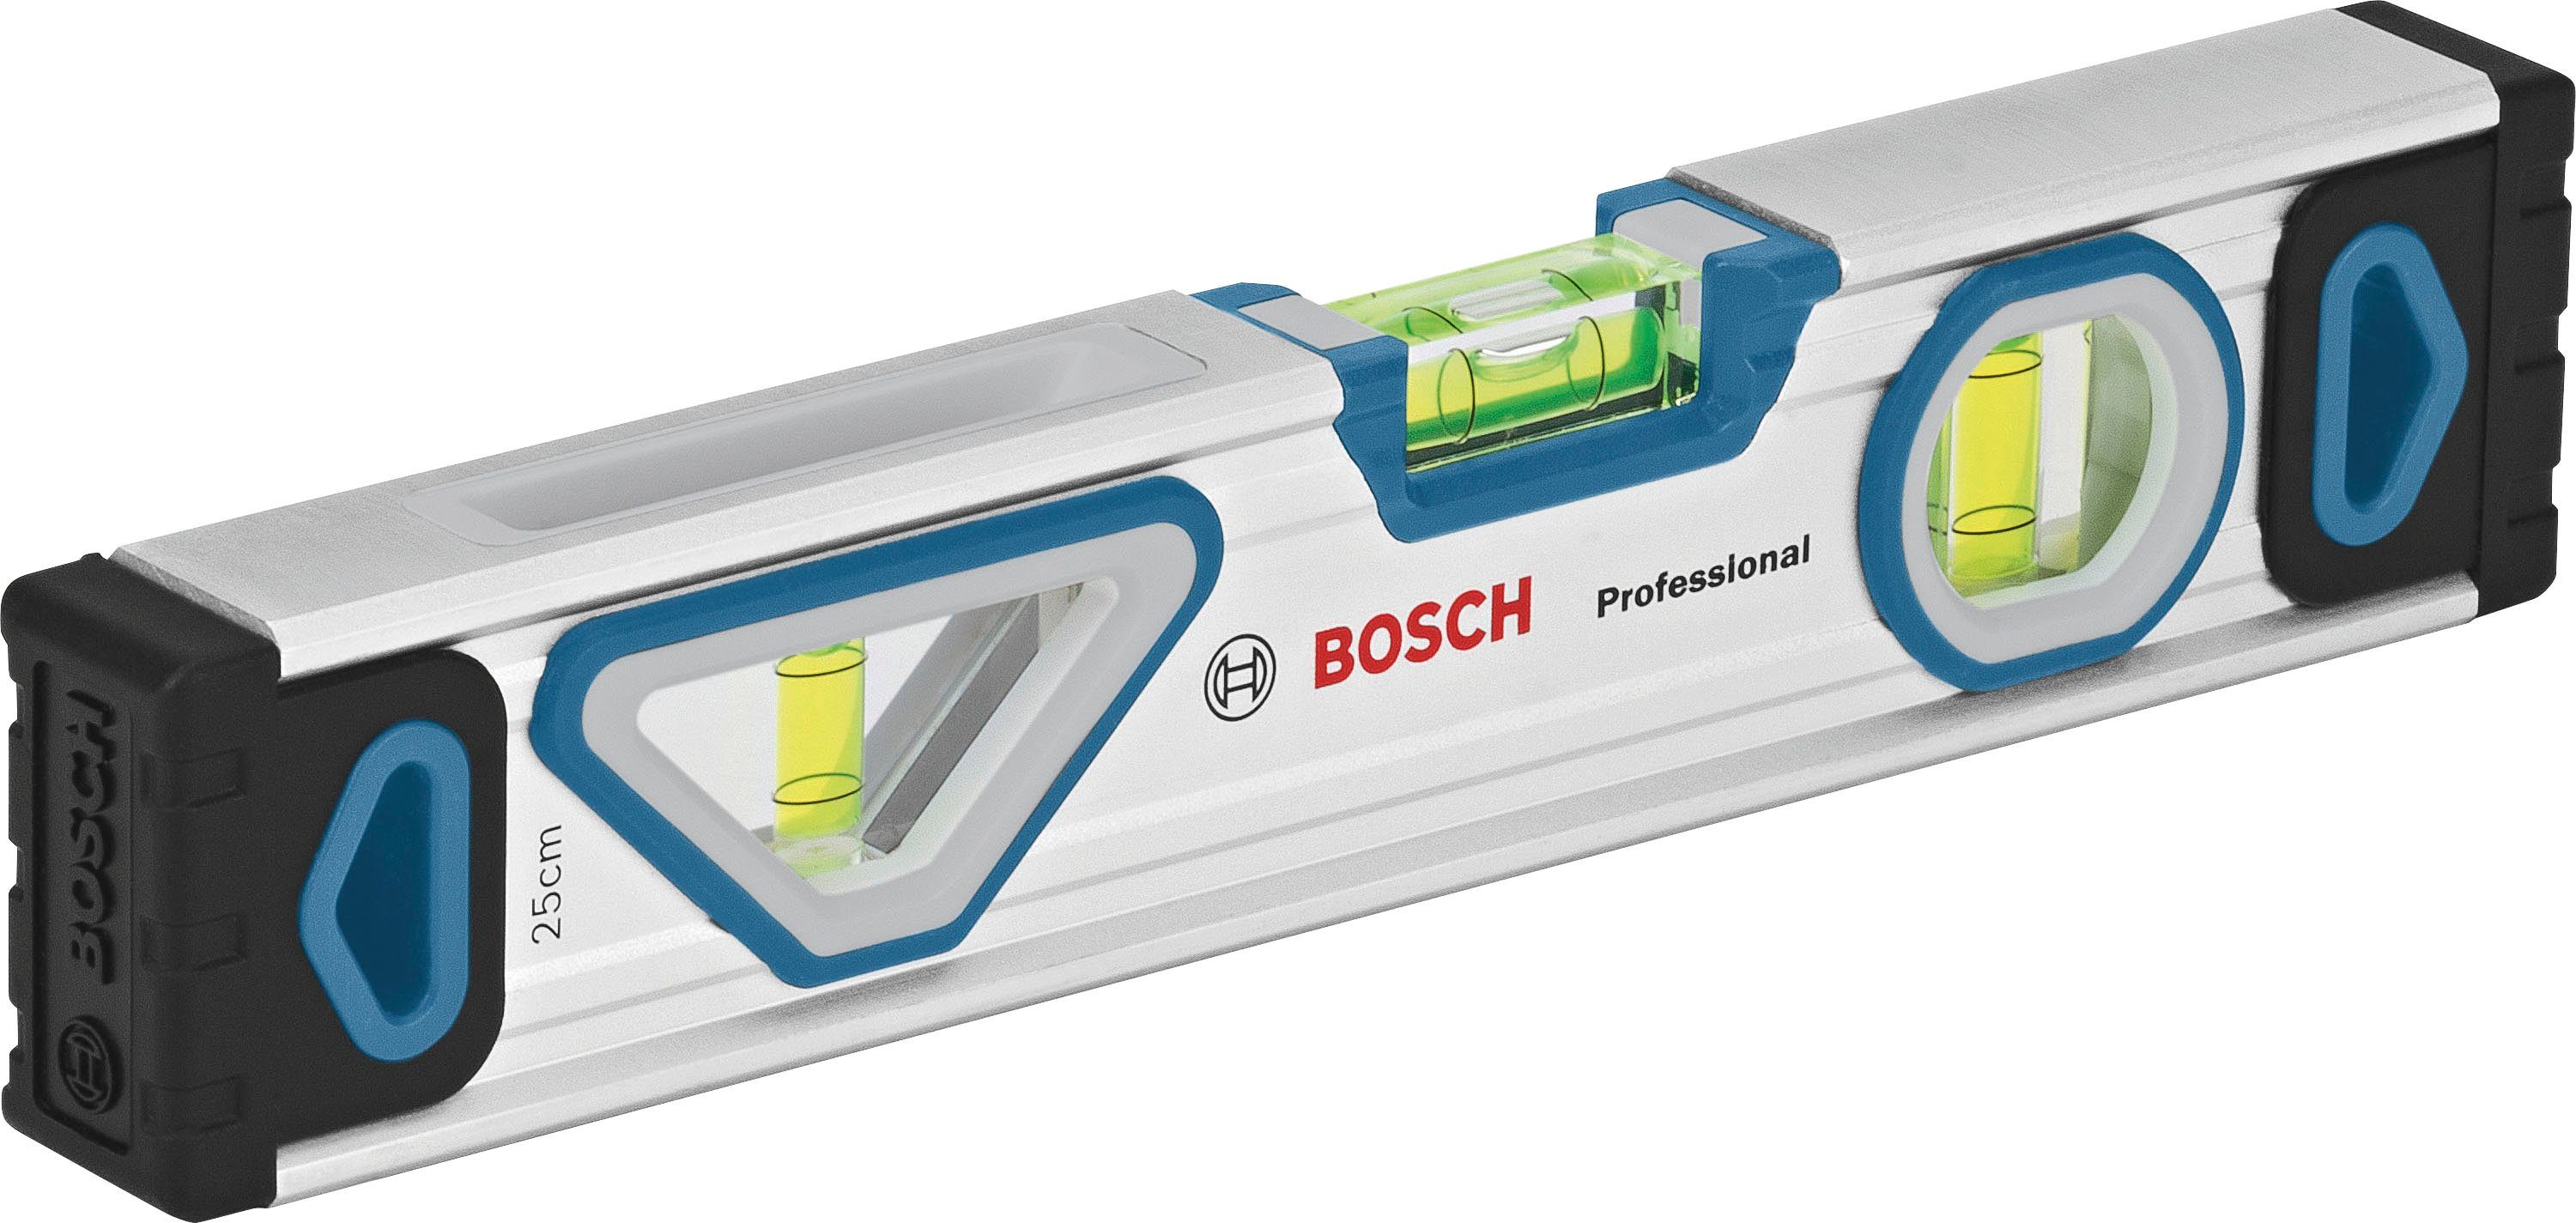 Bosch Professional Werkzeugset (1600A027M3), 13-tlg., Wasserwaage, Maßband, Universalmesser und Ersatzklingen